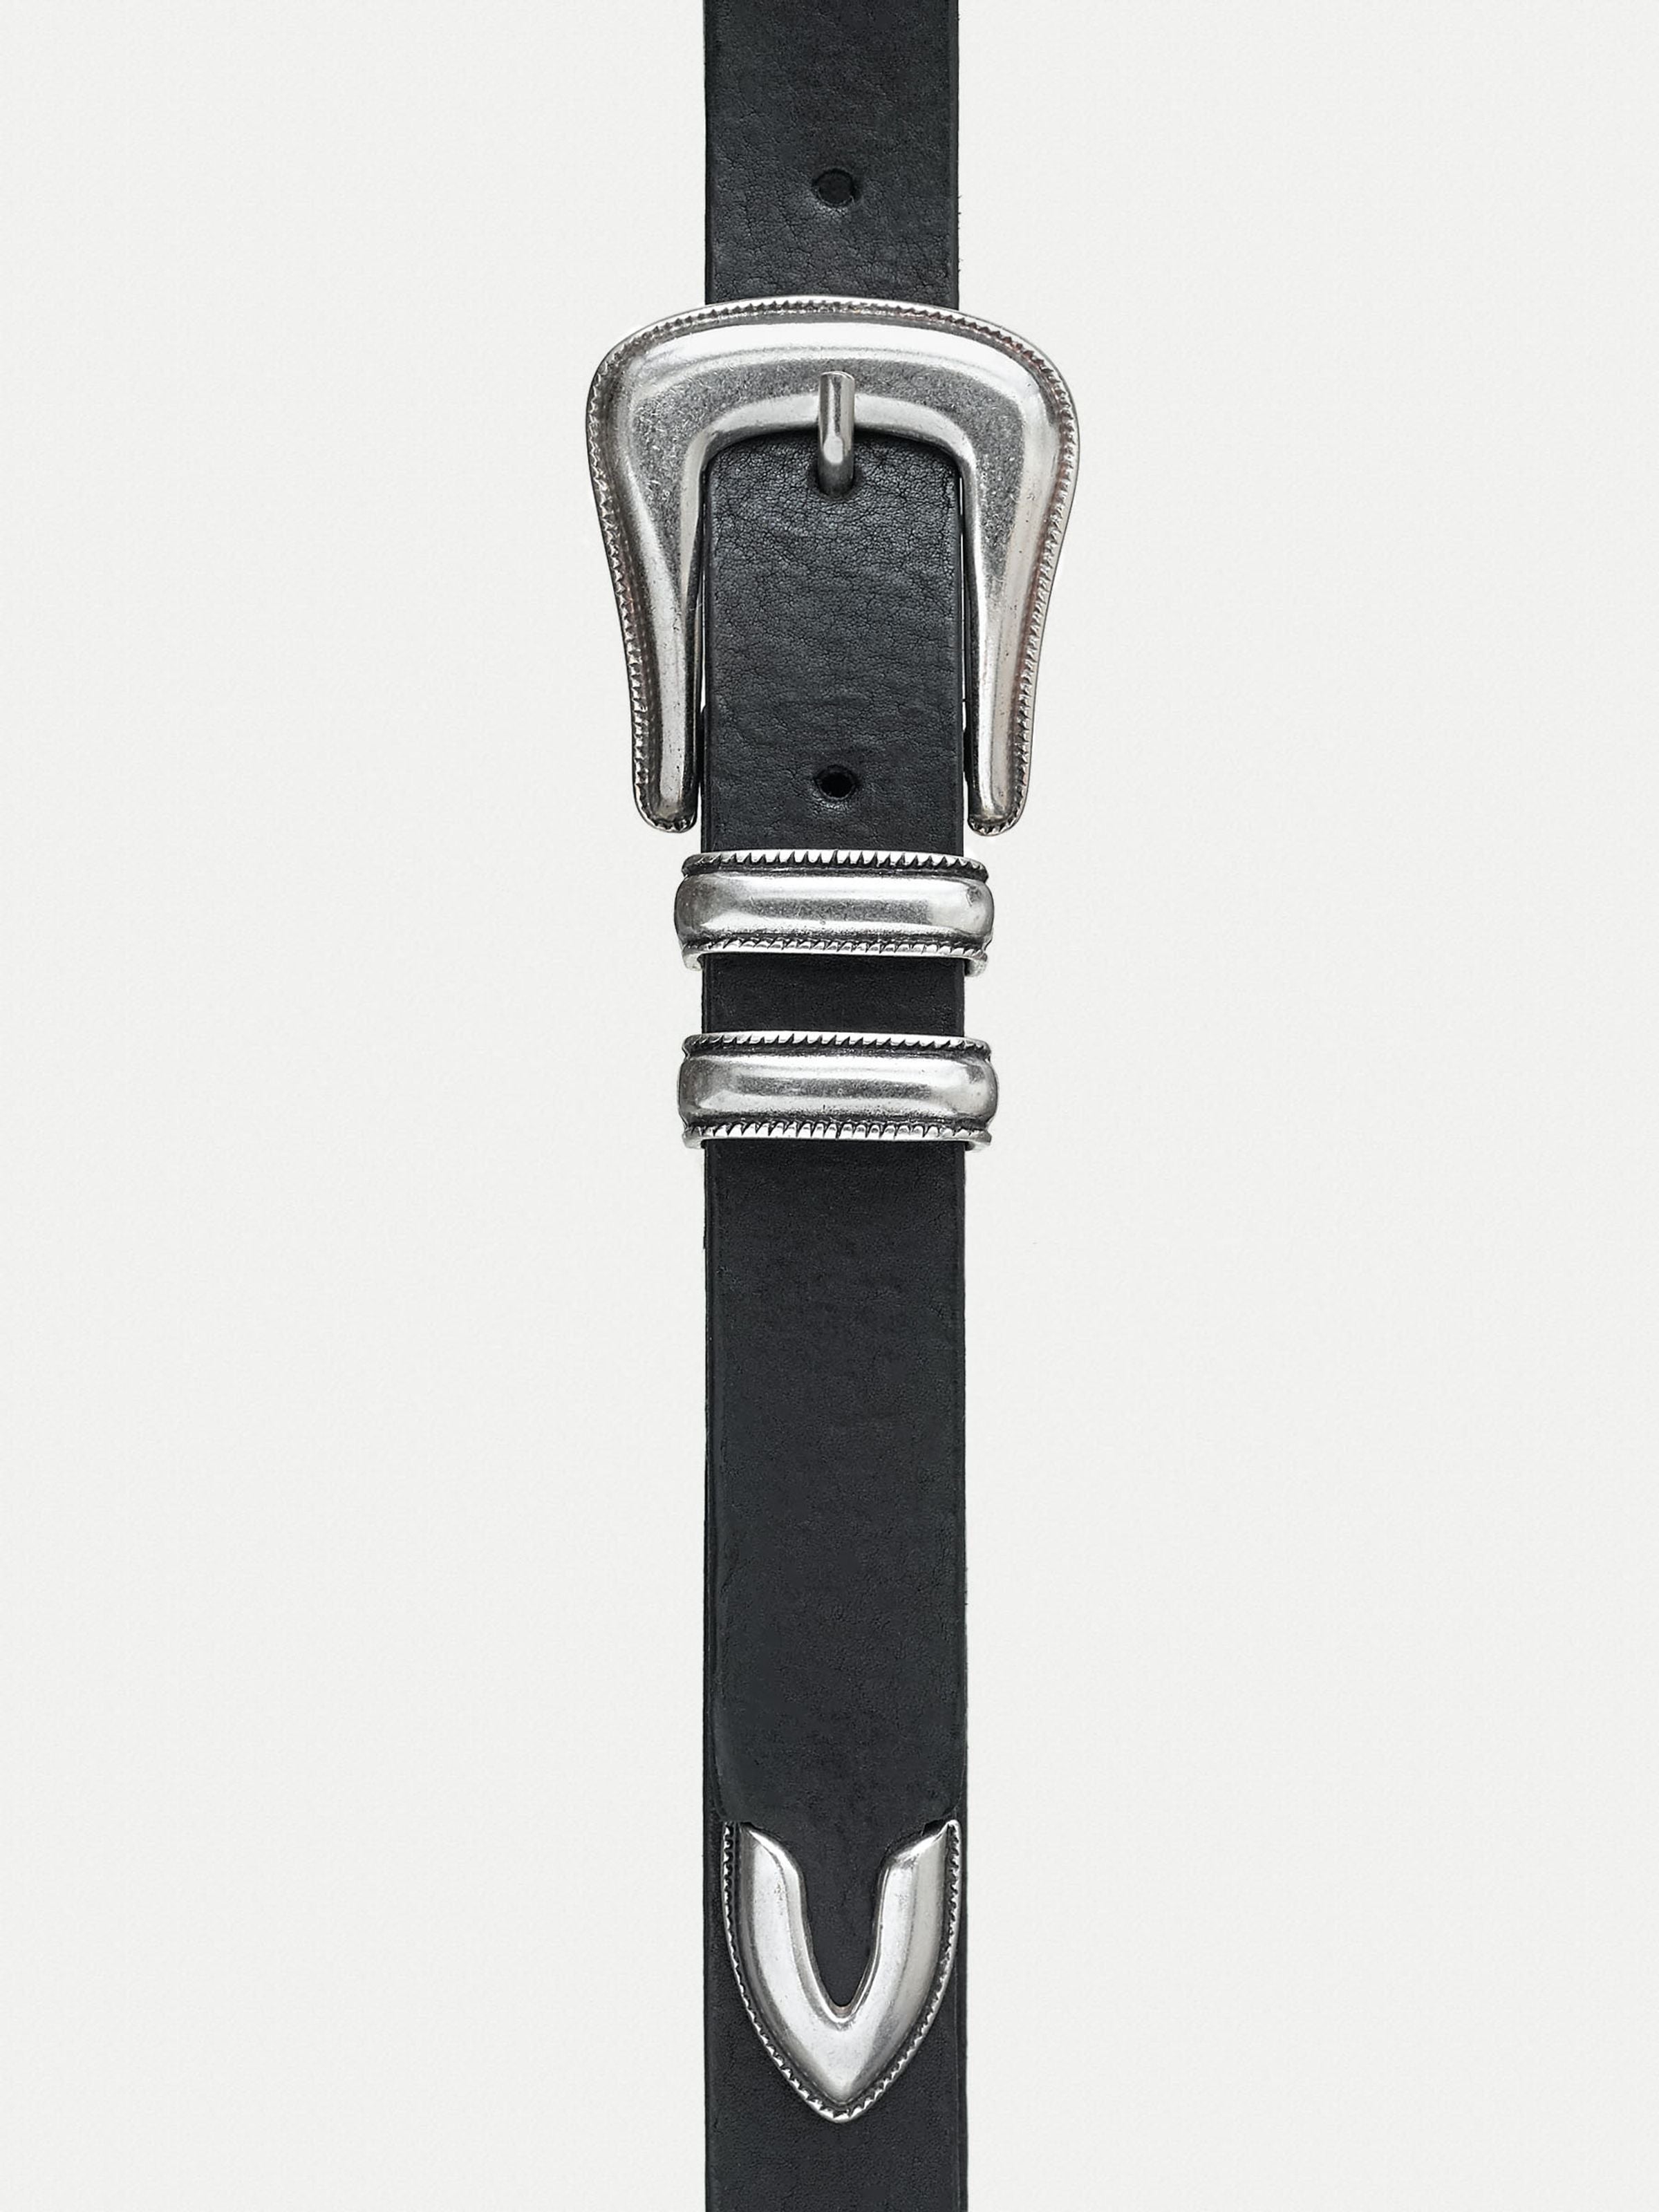 Western Silver Belt - Black - Nudie Jeans - Danali